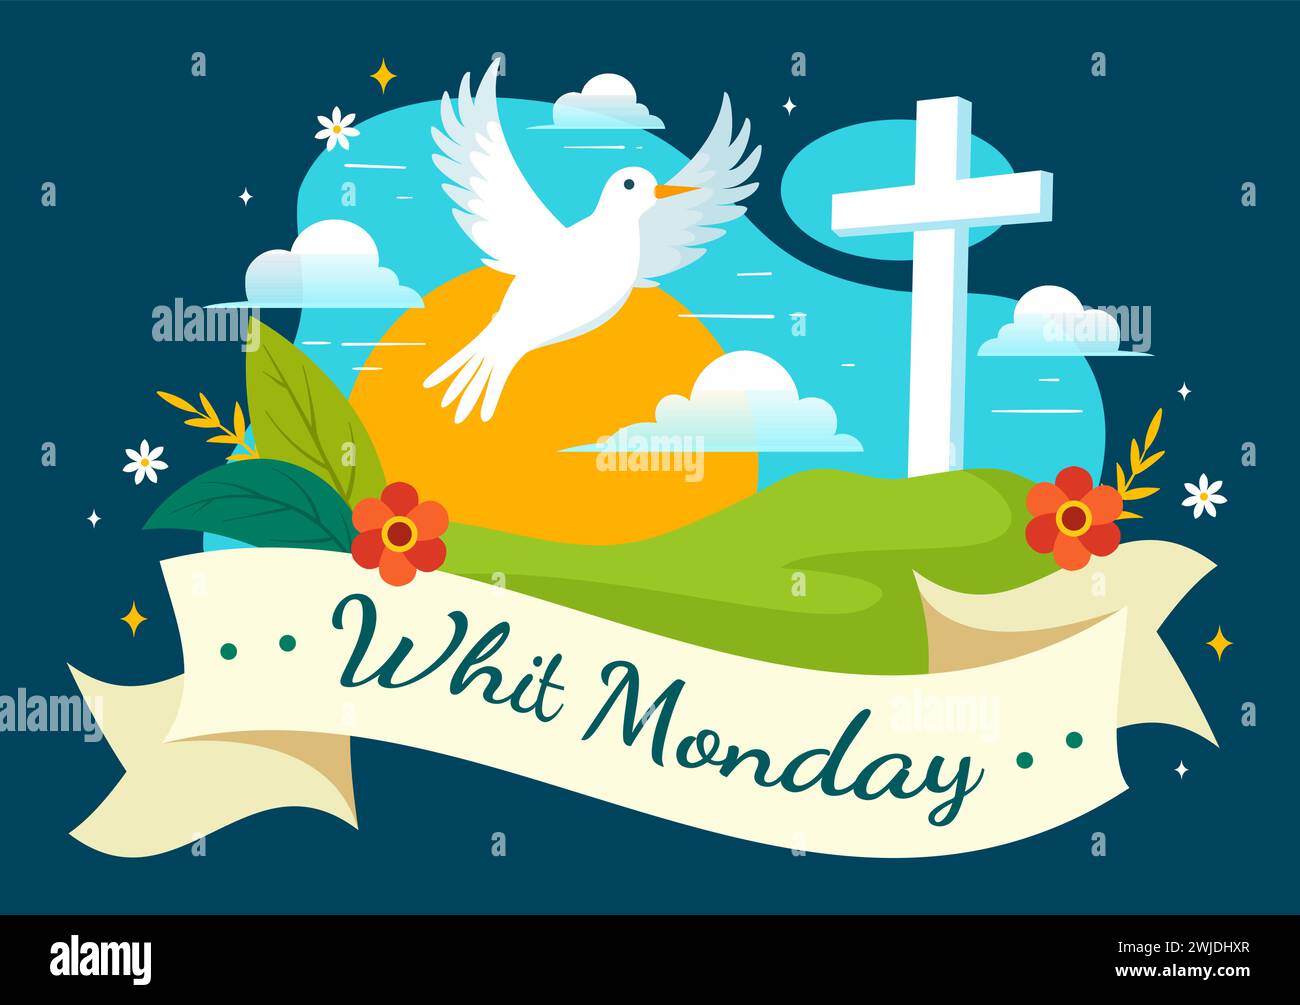 Whit Monday illustration vectorielle avec un pigeon ou une colombe pour les vacances de la communauté chrétienne du Saint-esprit dans la conception de fond de dessin animé plat Illustration de Vecteur